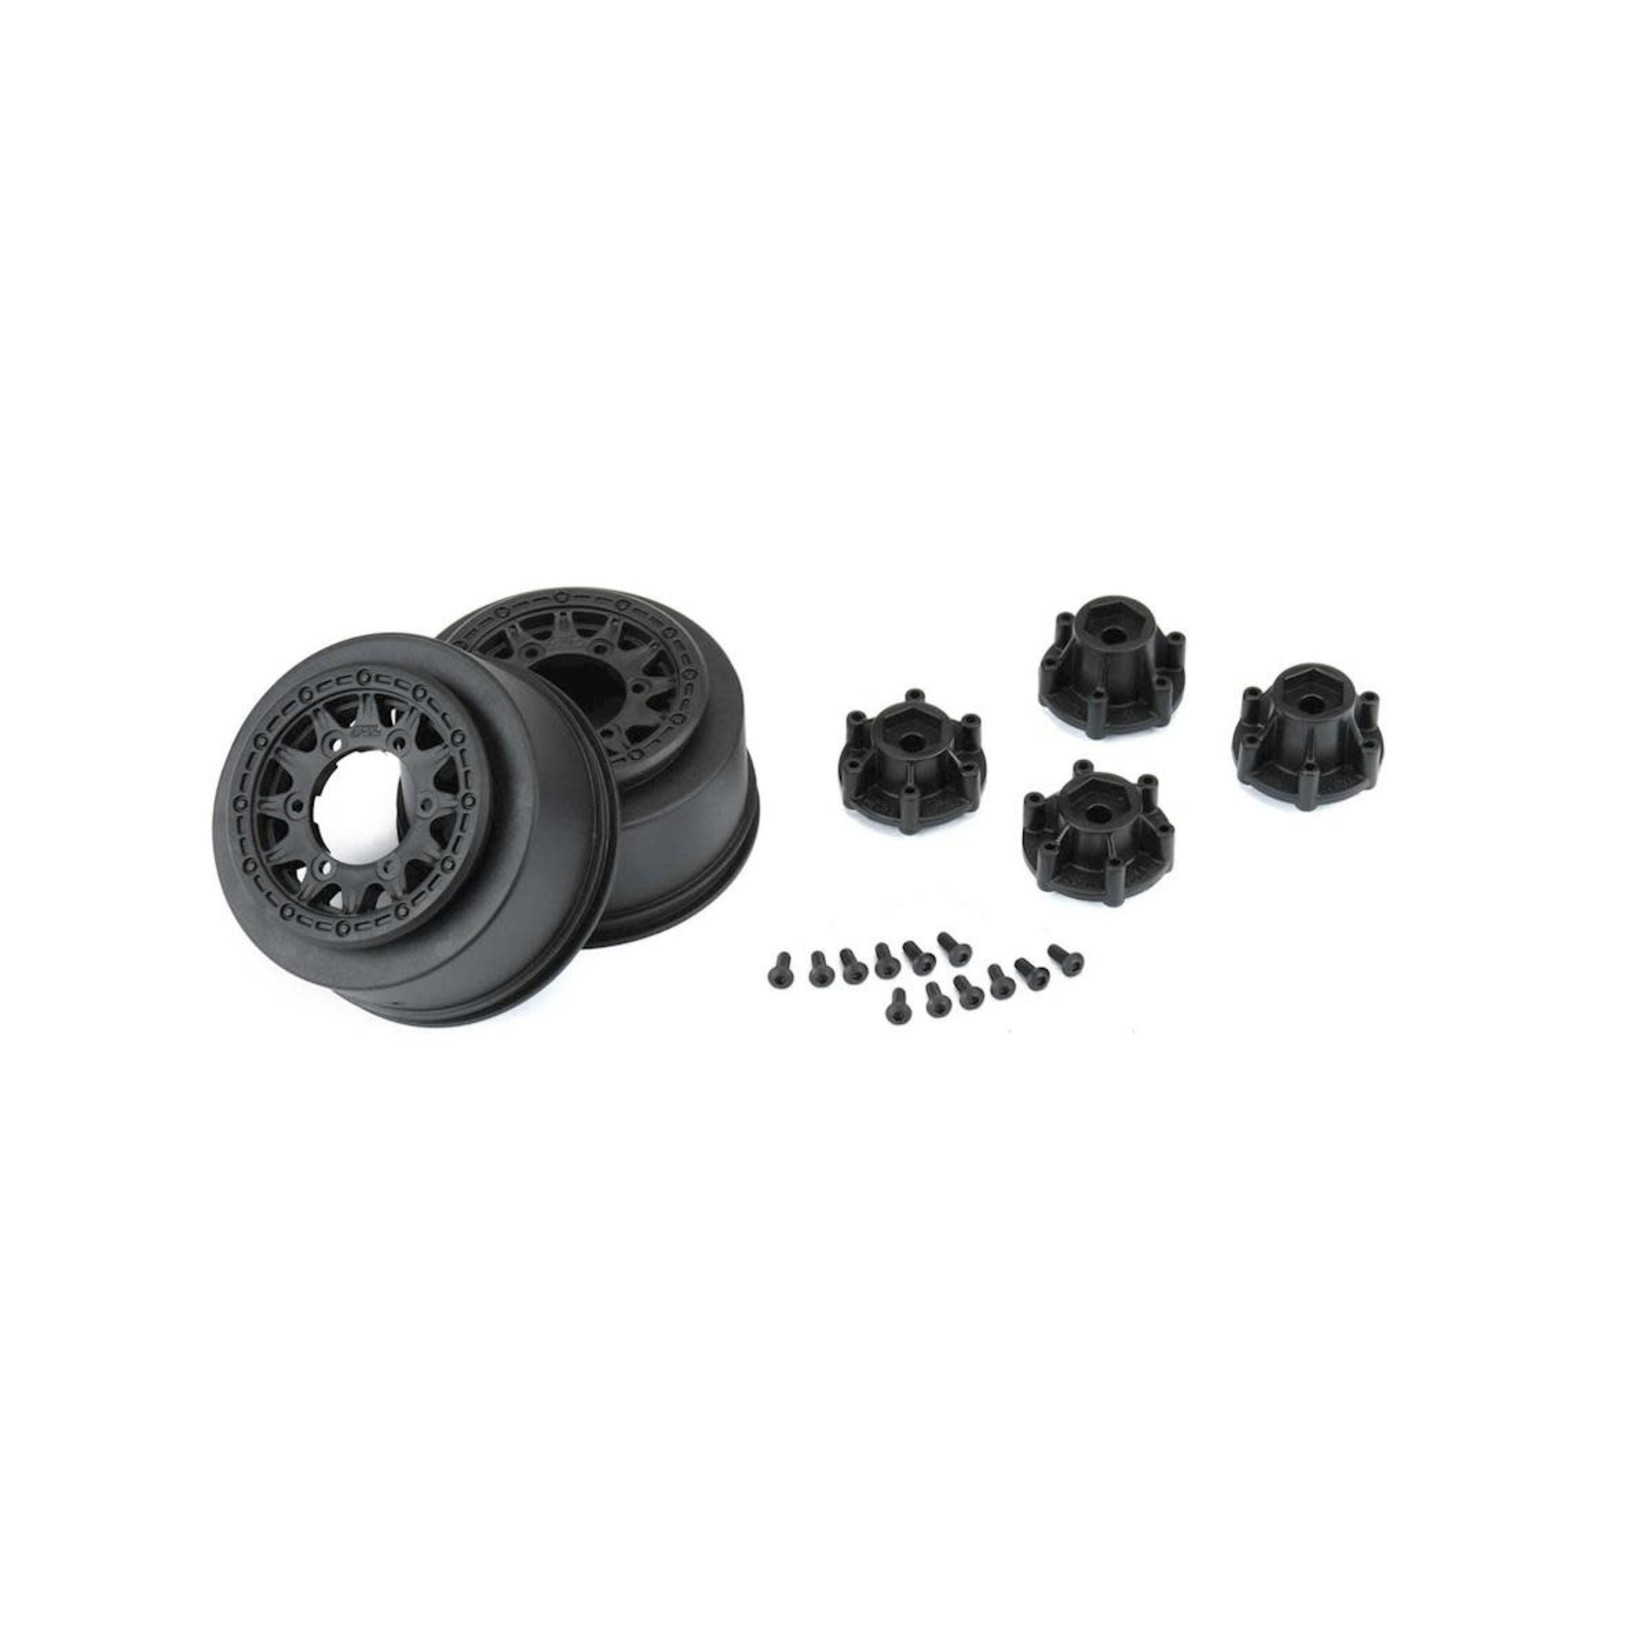 Pro-Line Pro-Line Raid Short Course Wheels (Black) (2) (Traxxas Slash) w/Removable 12mm Hex #2785-03